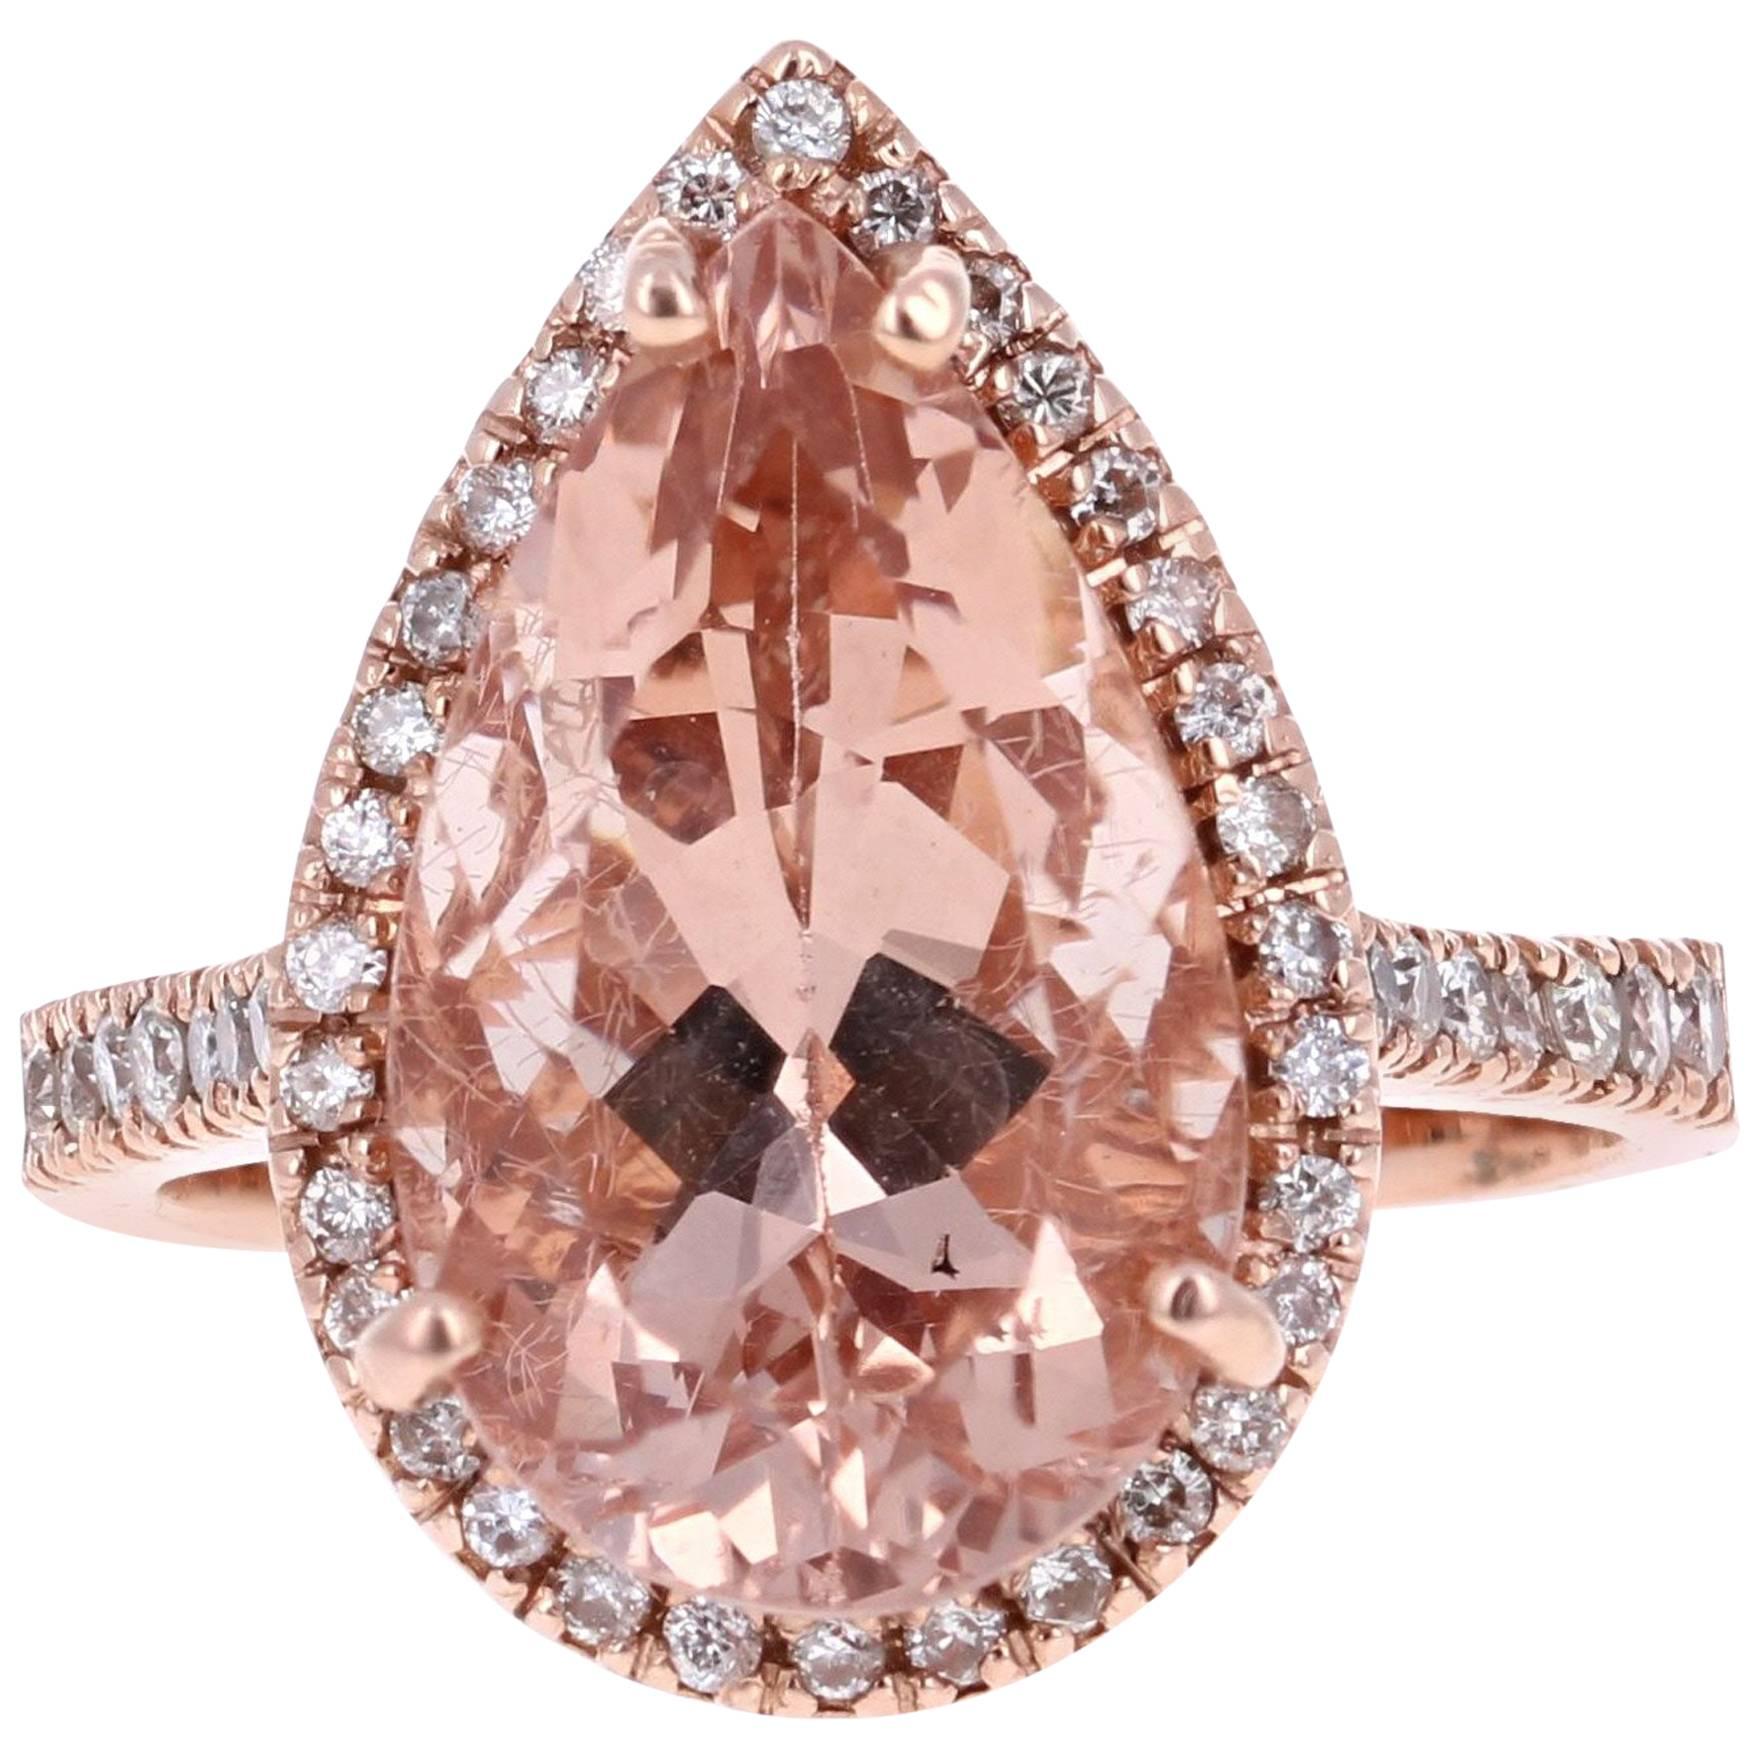 7.16 Carat Pear Cut Morganite Diamond Rose Gold Engagement Ring